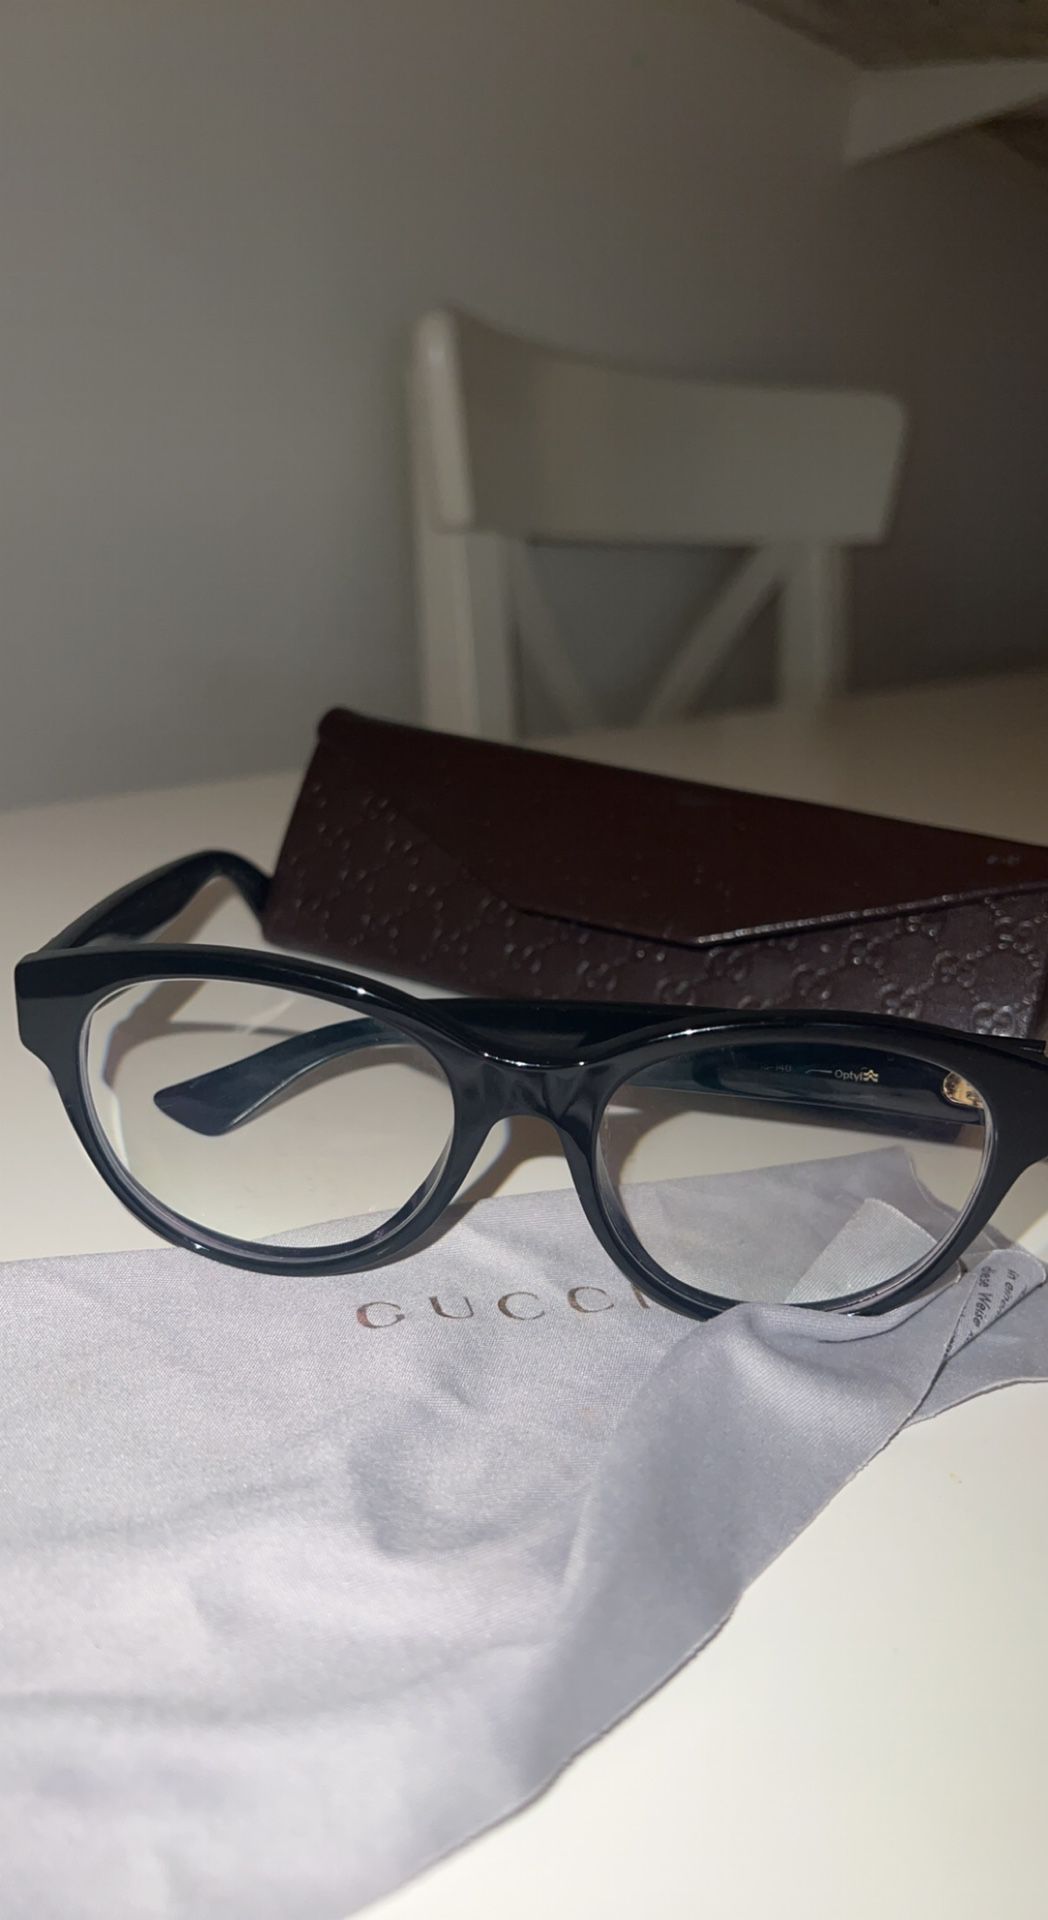 gucci optical glasses -3.75